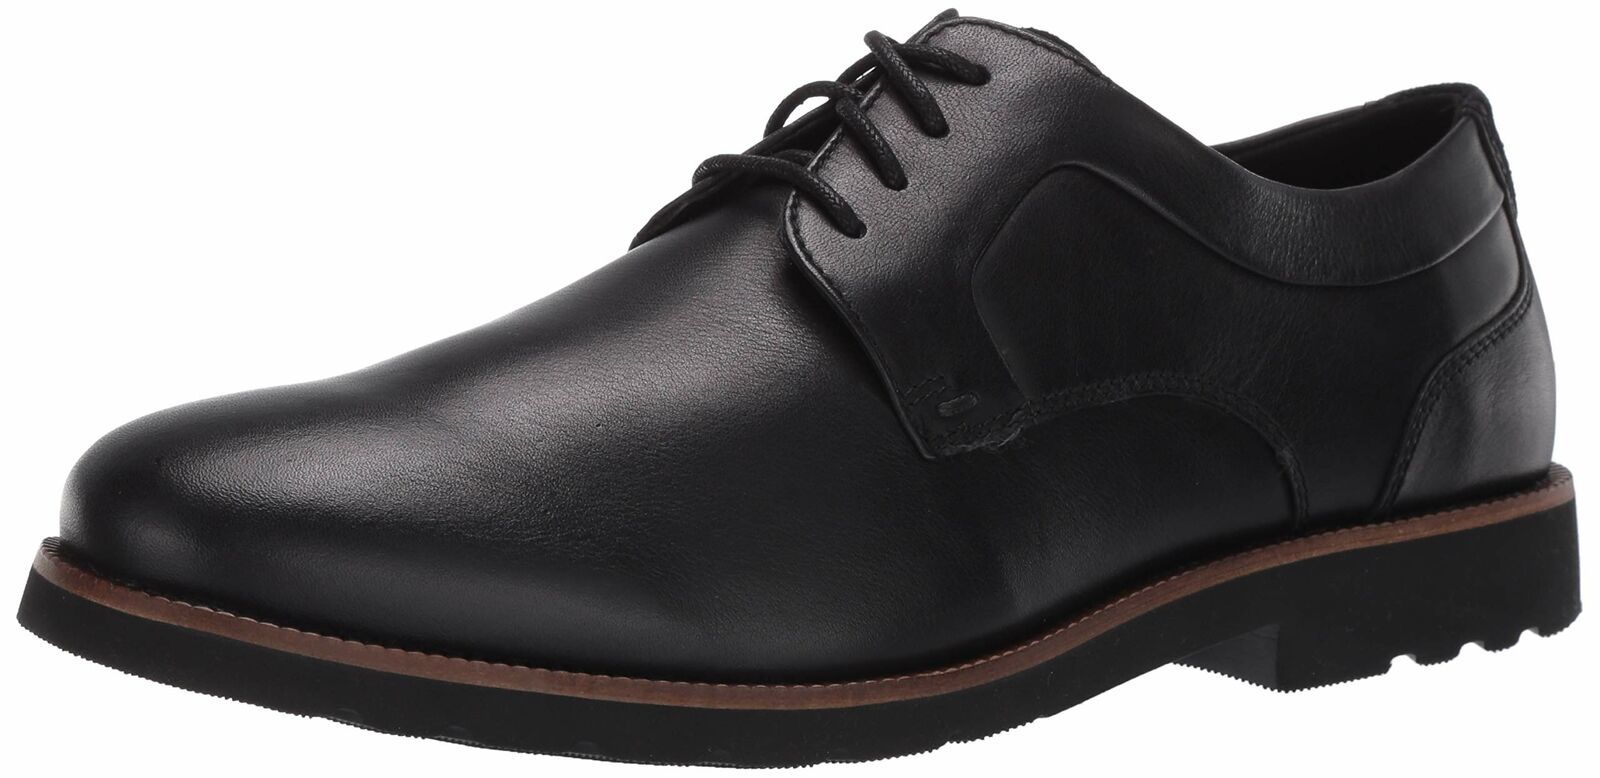 Primary image for Rockport Men's Colben Plain Toe Oxford Dress Shoe Black V74248 Size 7.5W